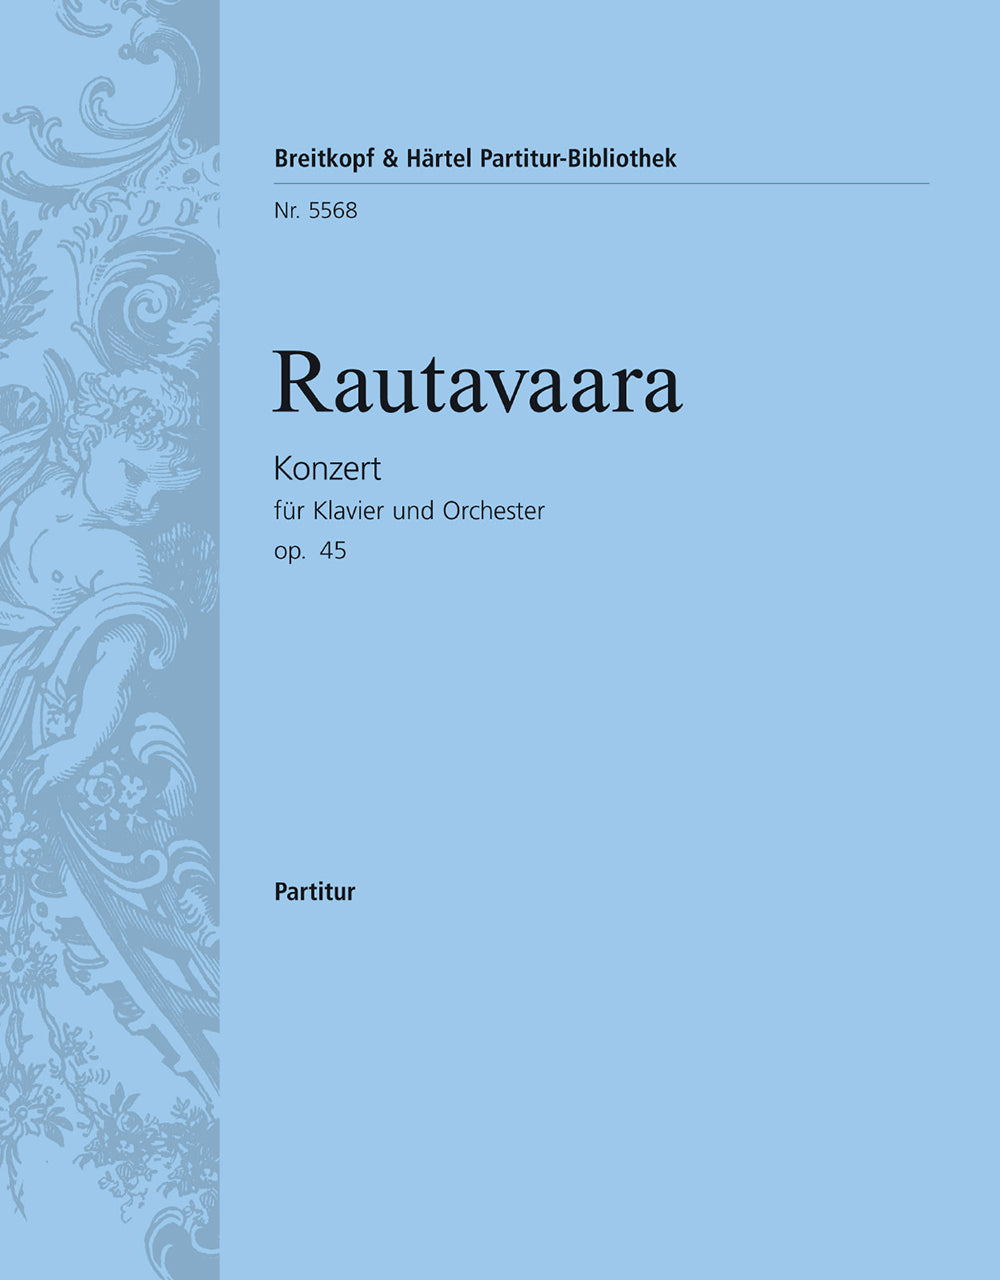 Rautavaar Piano Concerto No. 1 (Op. 45)